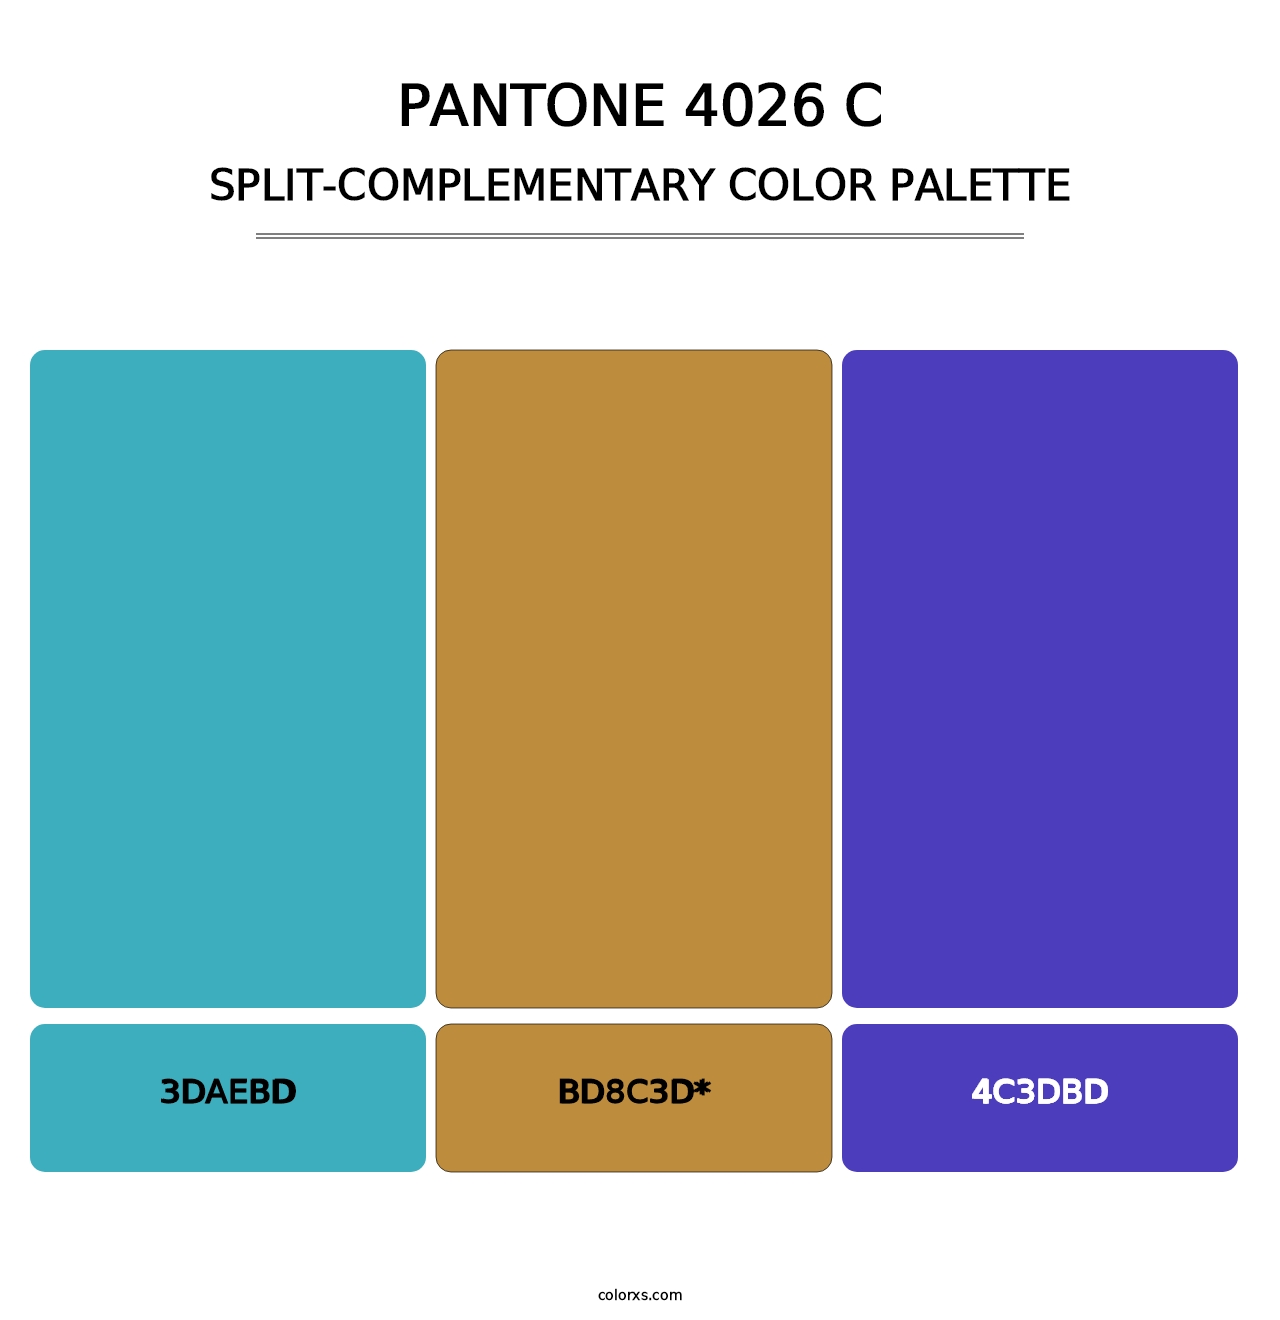 PANTONE 4026 C - Split-Complementary Color Palette